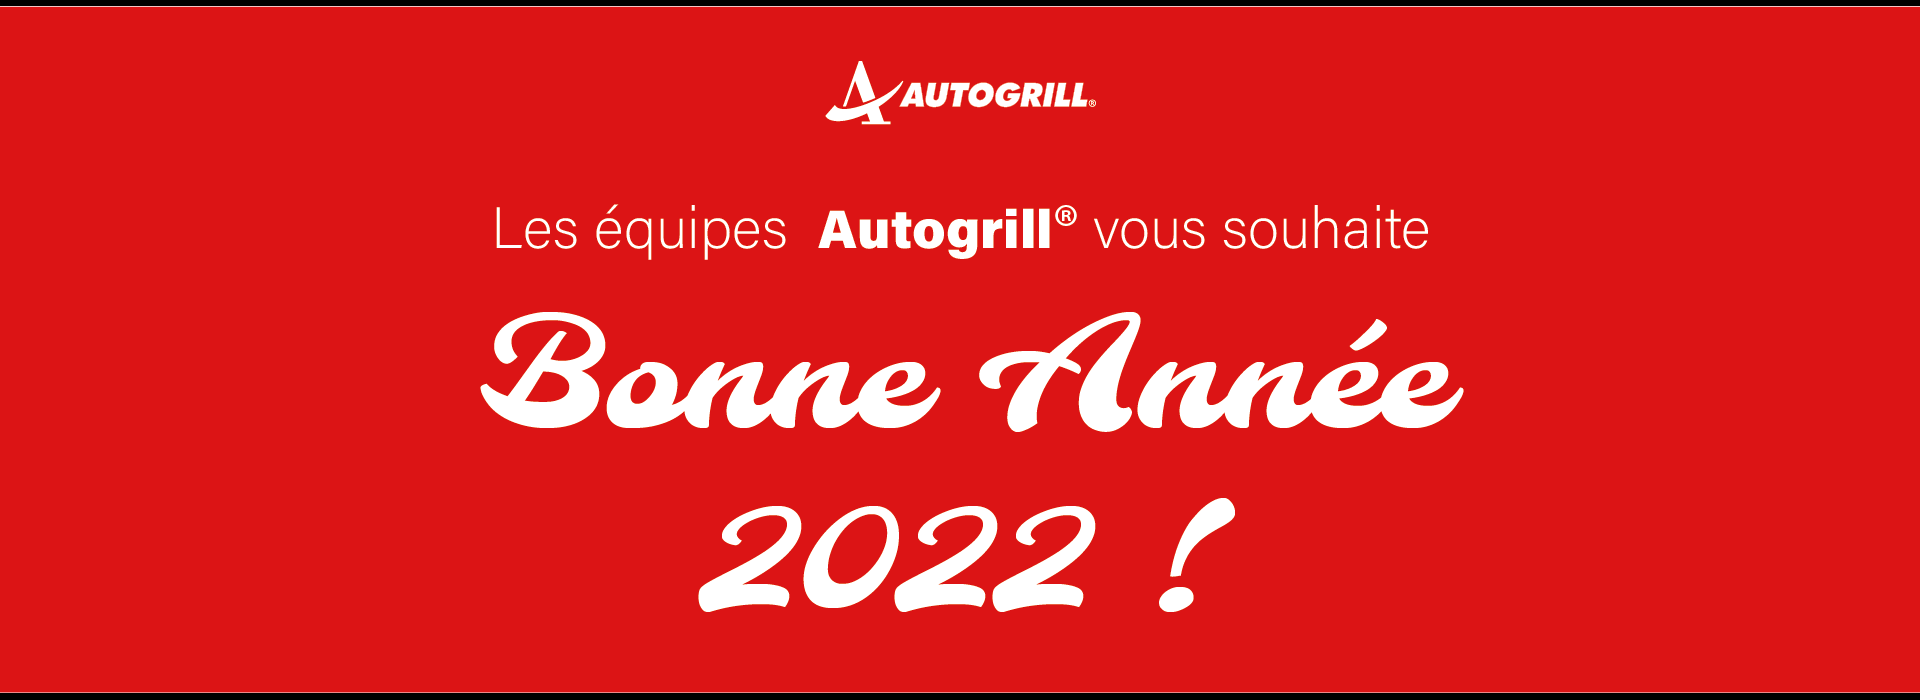 Autogrill vous souhaite une bonne année 2022 ! 